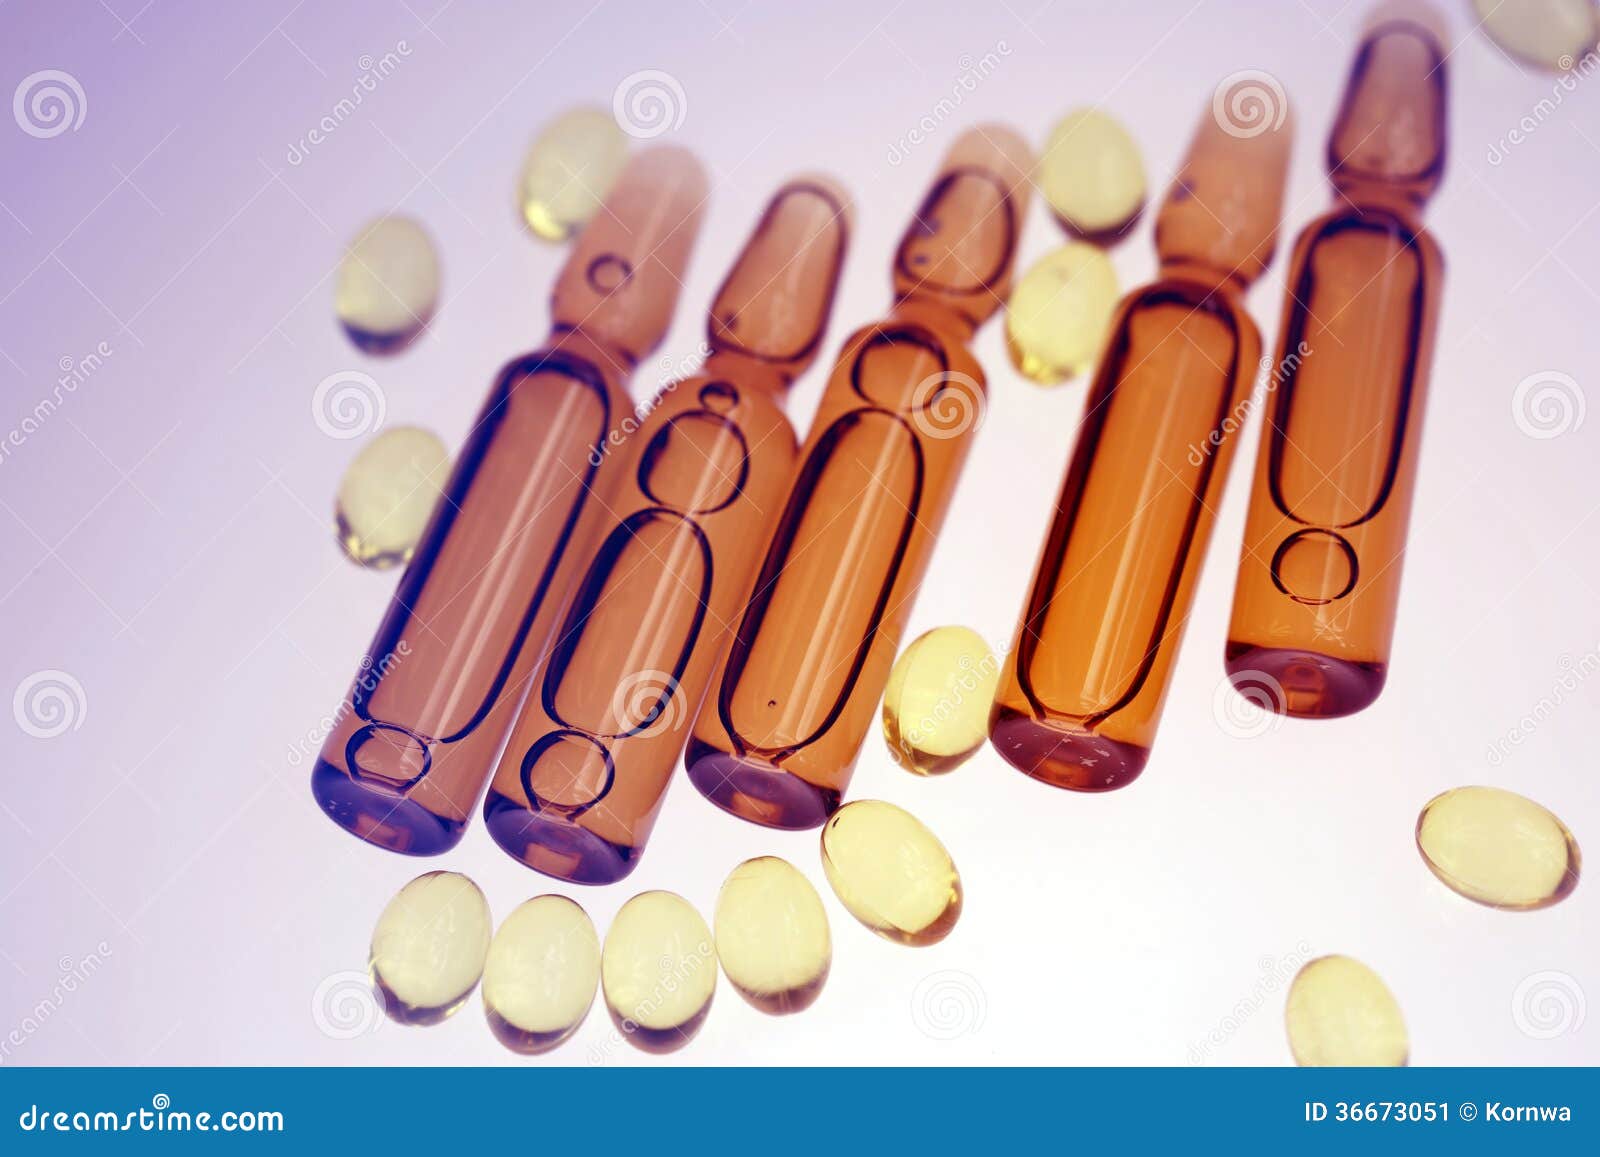 drugs or vitamins in vial